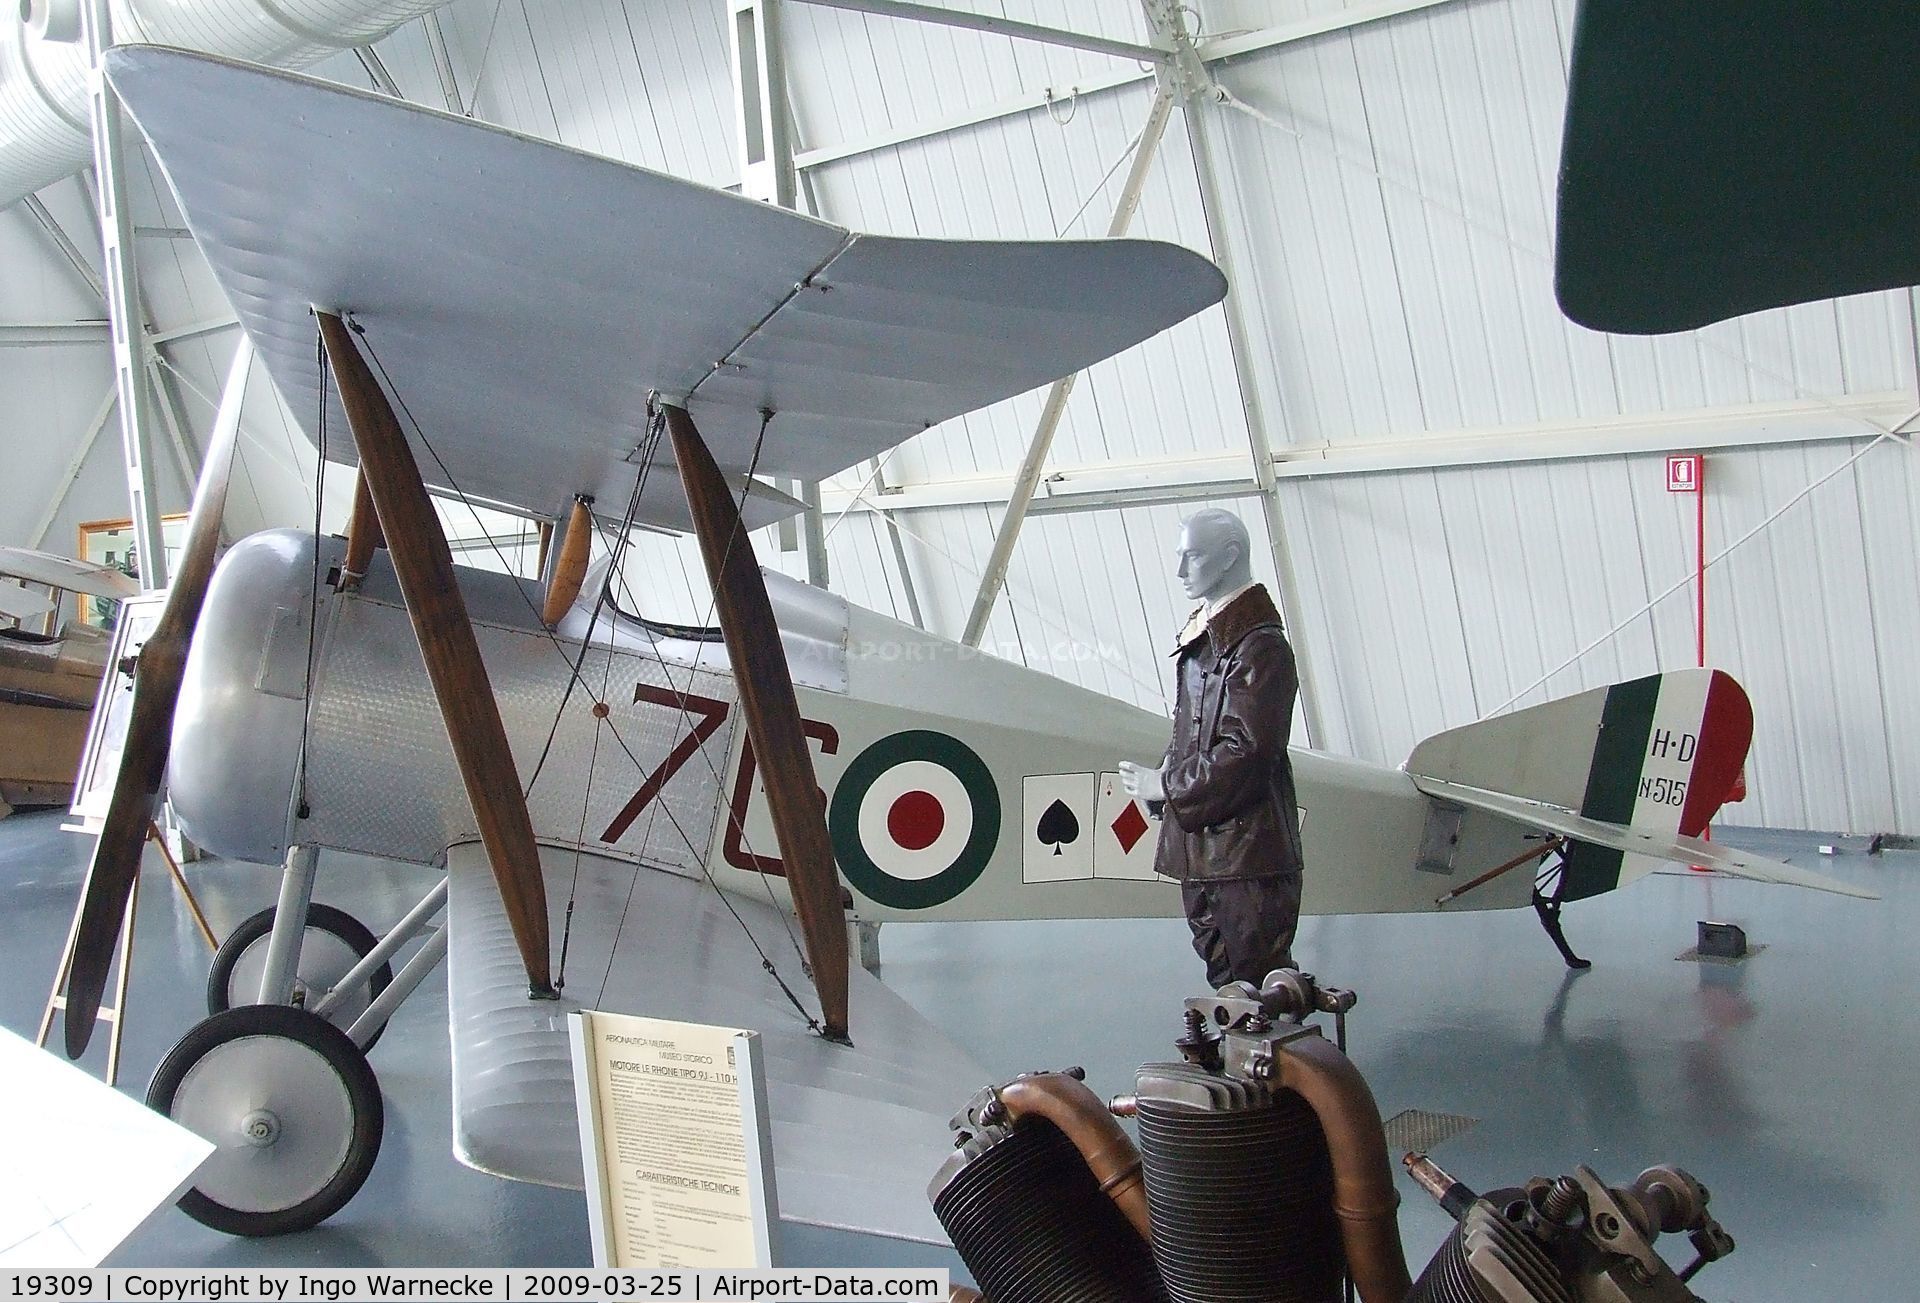 19309, 1917 Hanriot HD-1 C/N 515, Hanriot HD-1 at the Museo storico dell'Aeronautica Militare, Vigna di Valle